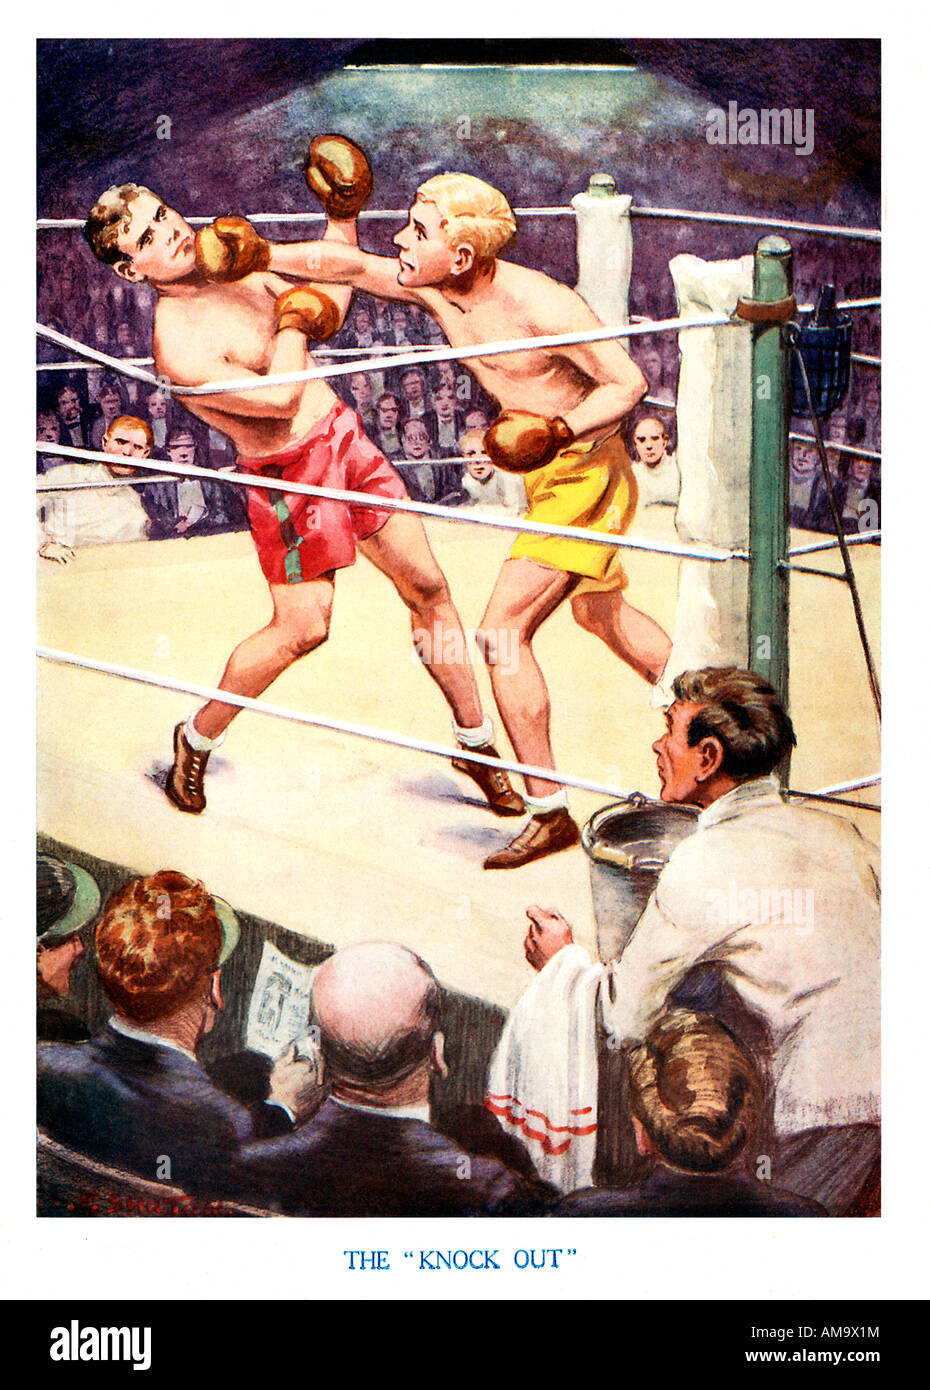 Knock out 1920er Jahre Jungen Magazin Illustration eines Boxkampf, wo ein gerade rechts auf den Kiefer tut den Trick mit einem Knock out Punch Stockfoto